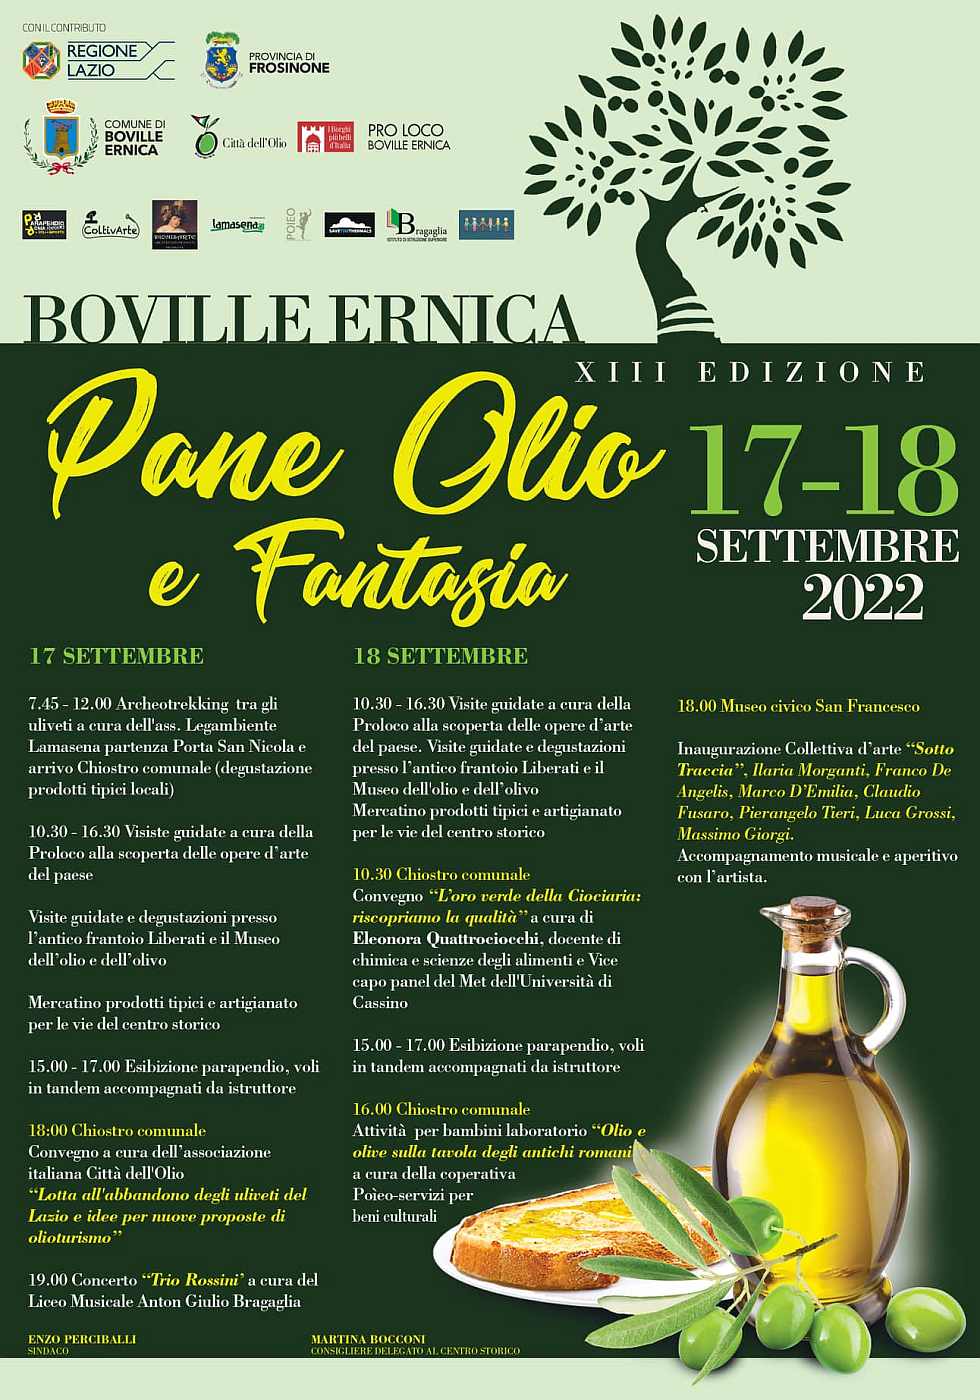 Boville Ernica (FR)
"Pane olio e Fantasia"
17-18 Settembre 2022